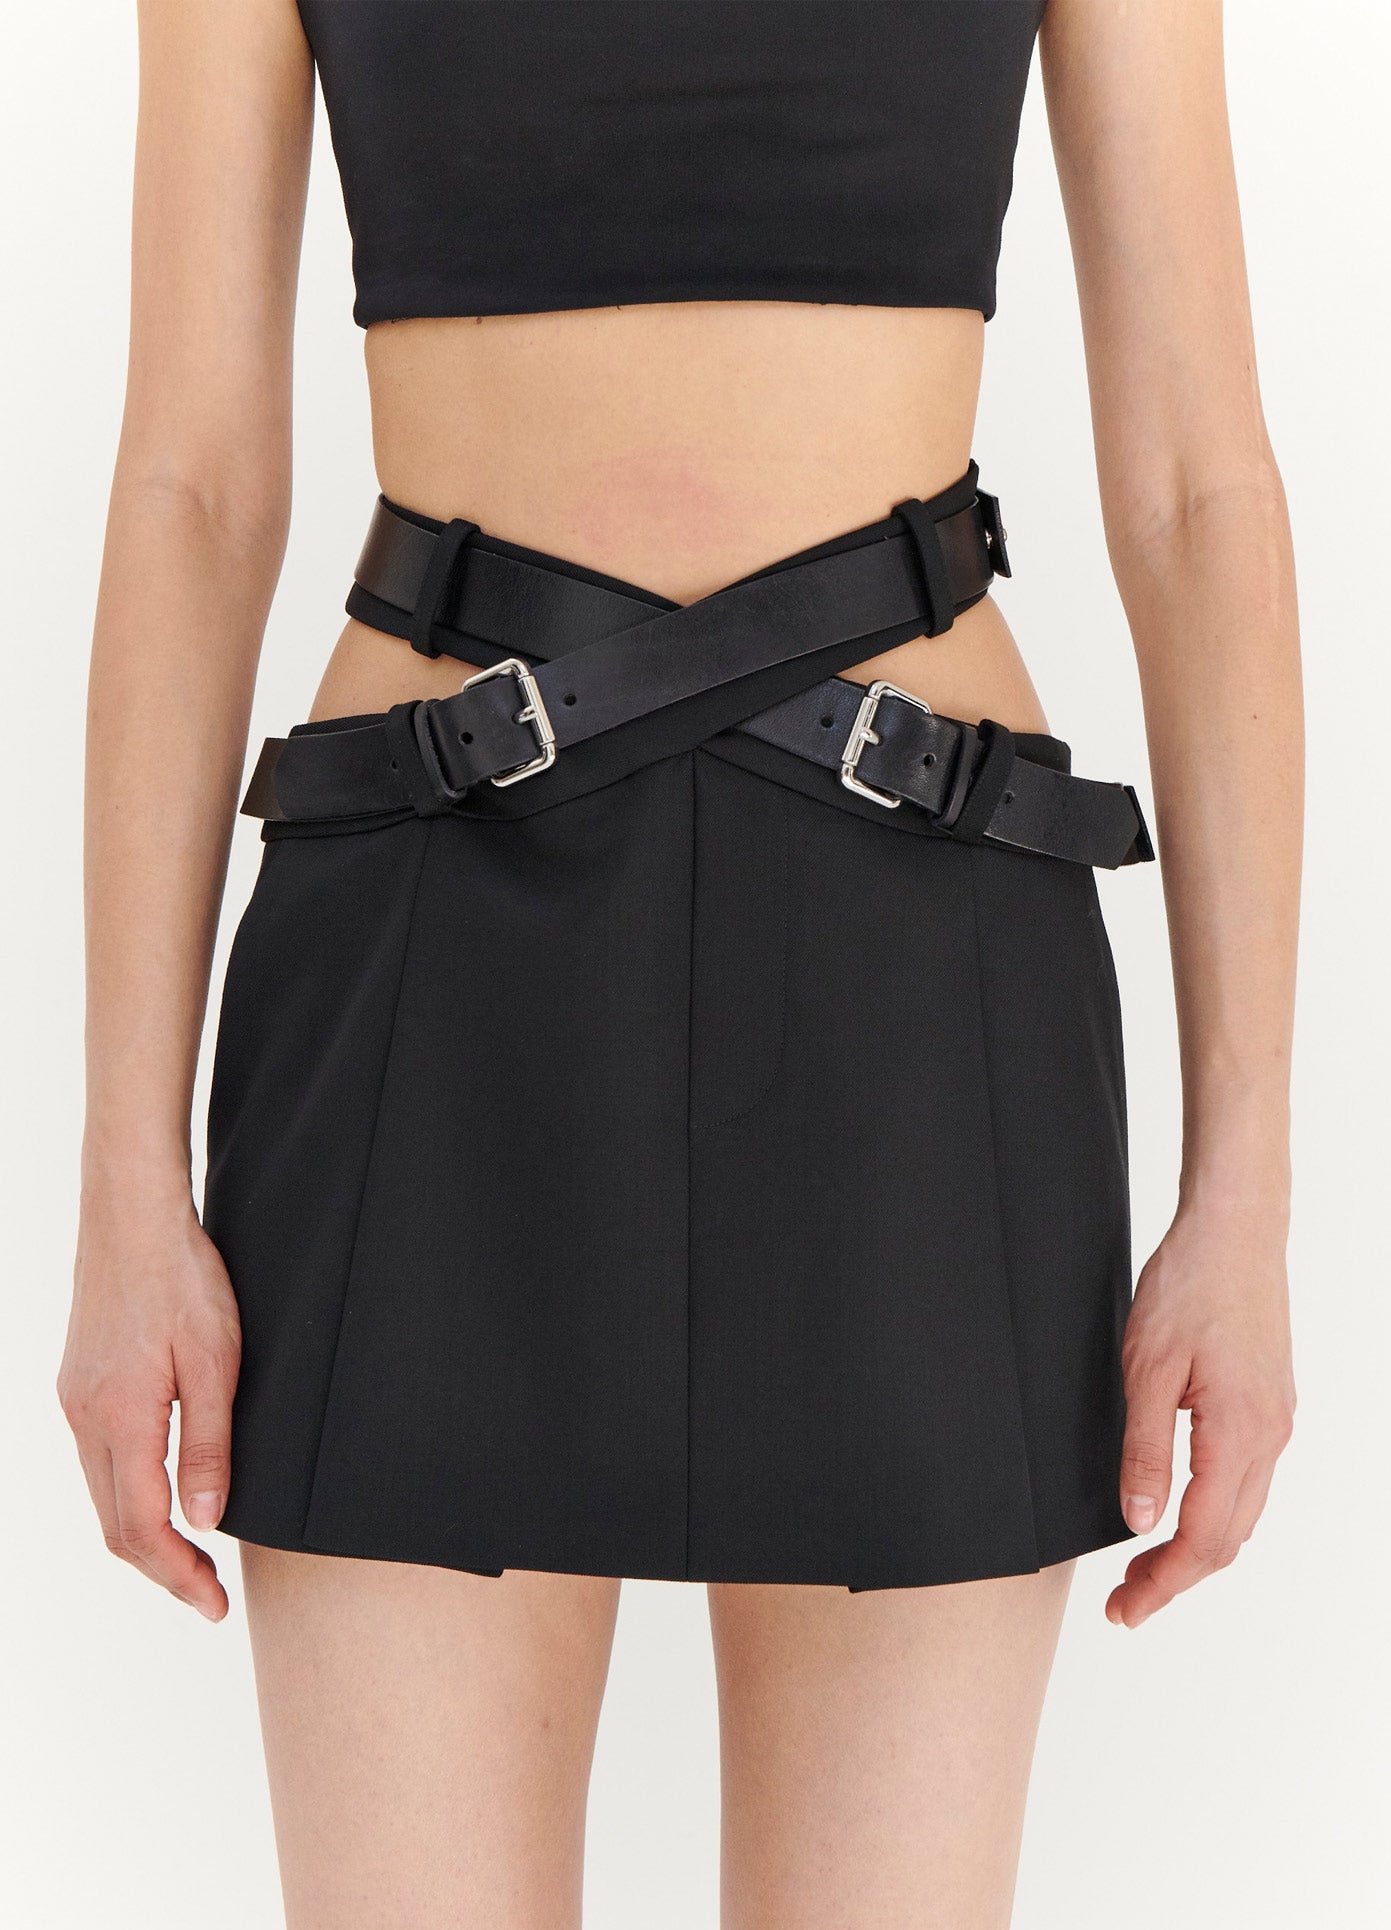 MONSE Criss Cross Waist Belted Mini Skirt in Black on Model Front Detail View